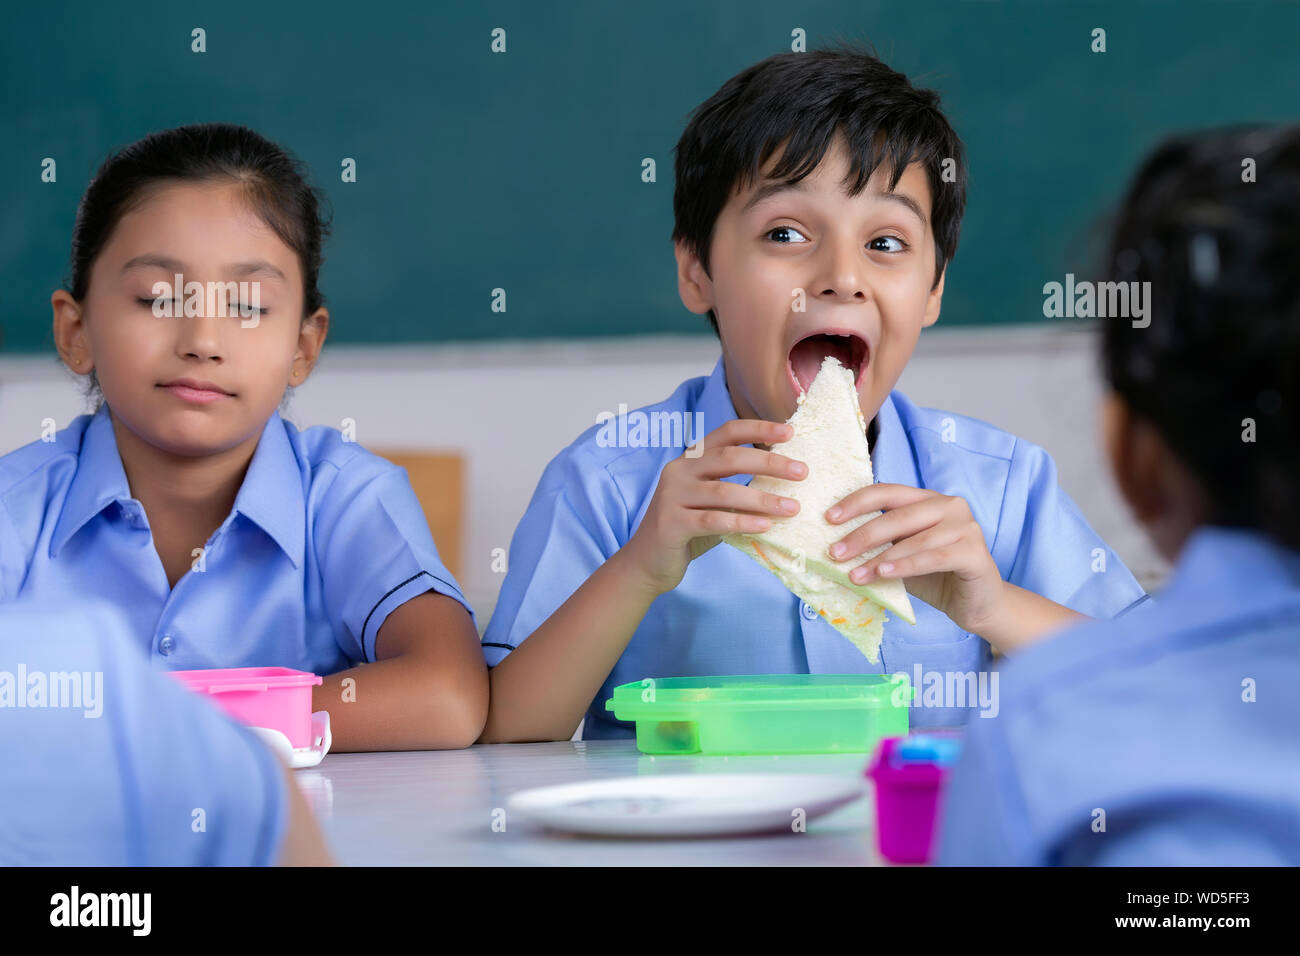 https://c8.alamy.com/comp/WD5FF3/school-boy-eating-sandwich-in-lunch-WD5FF3.jpg